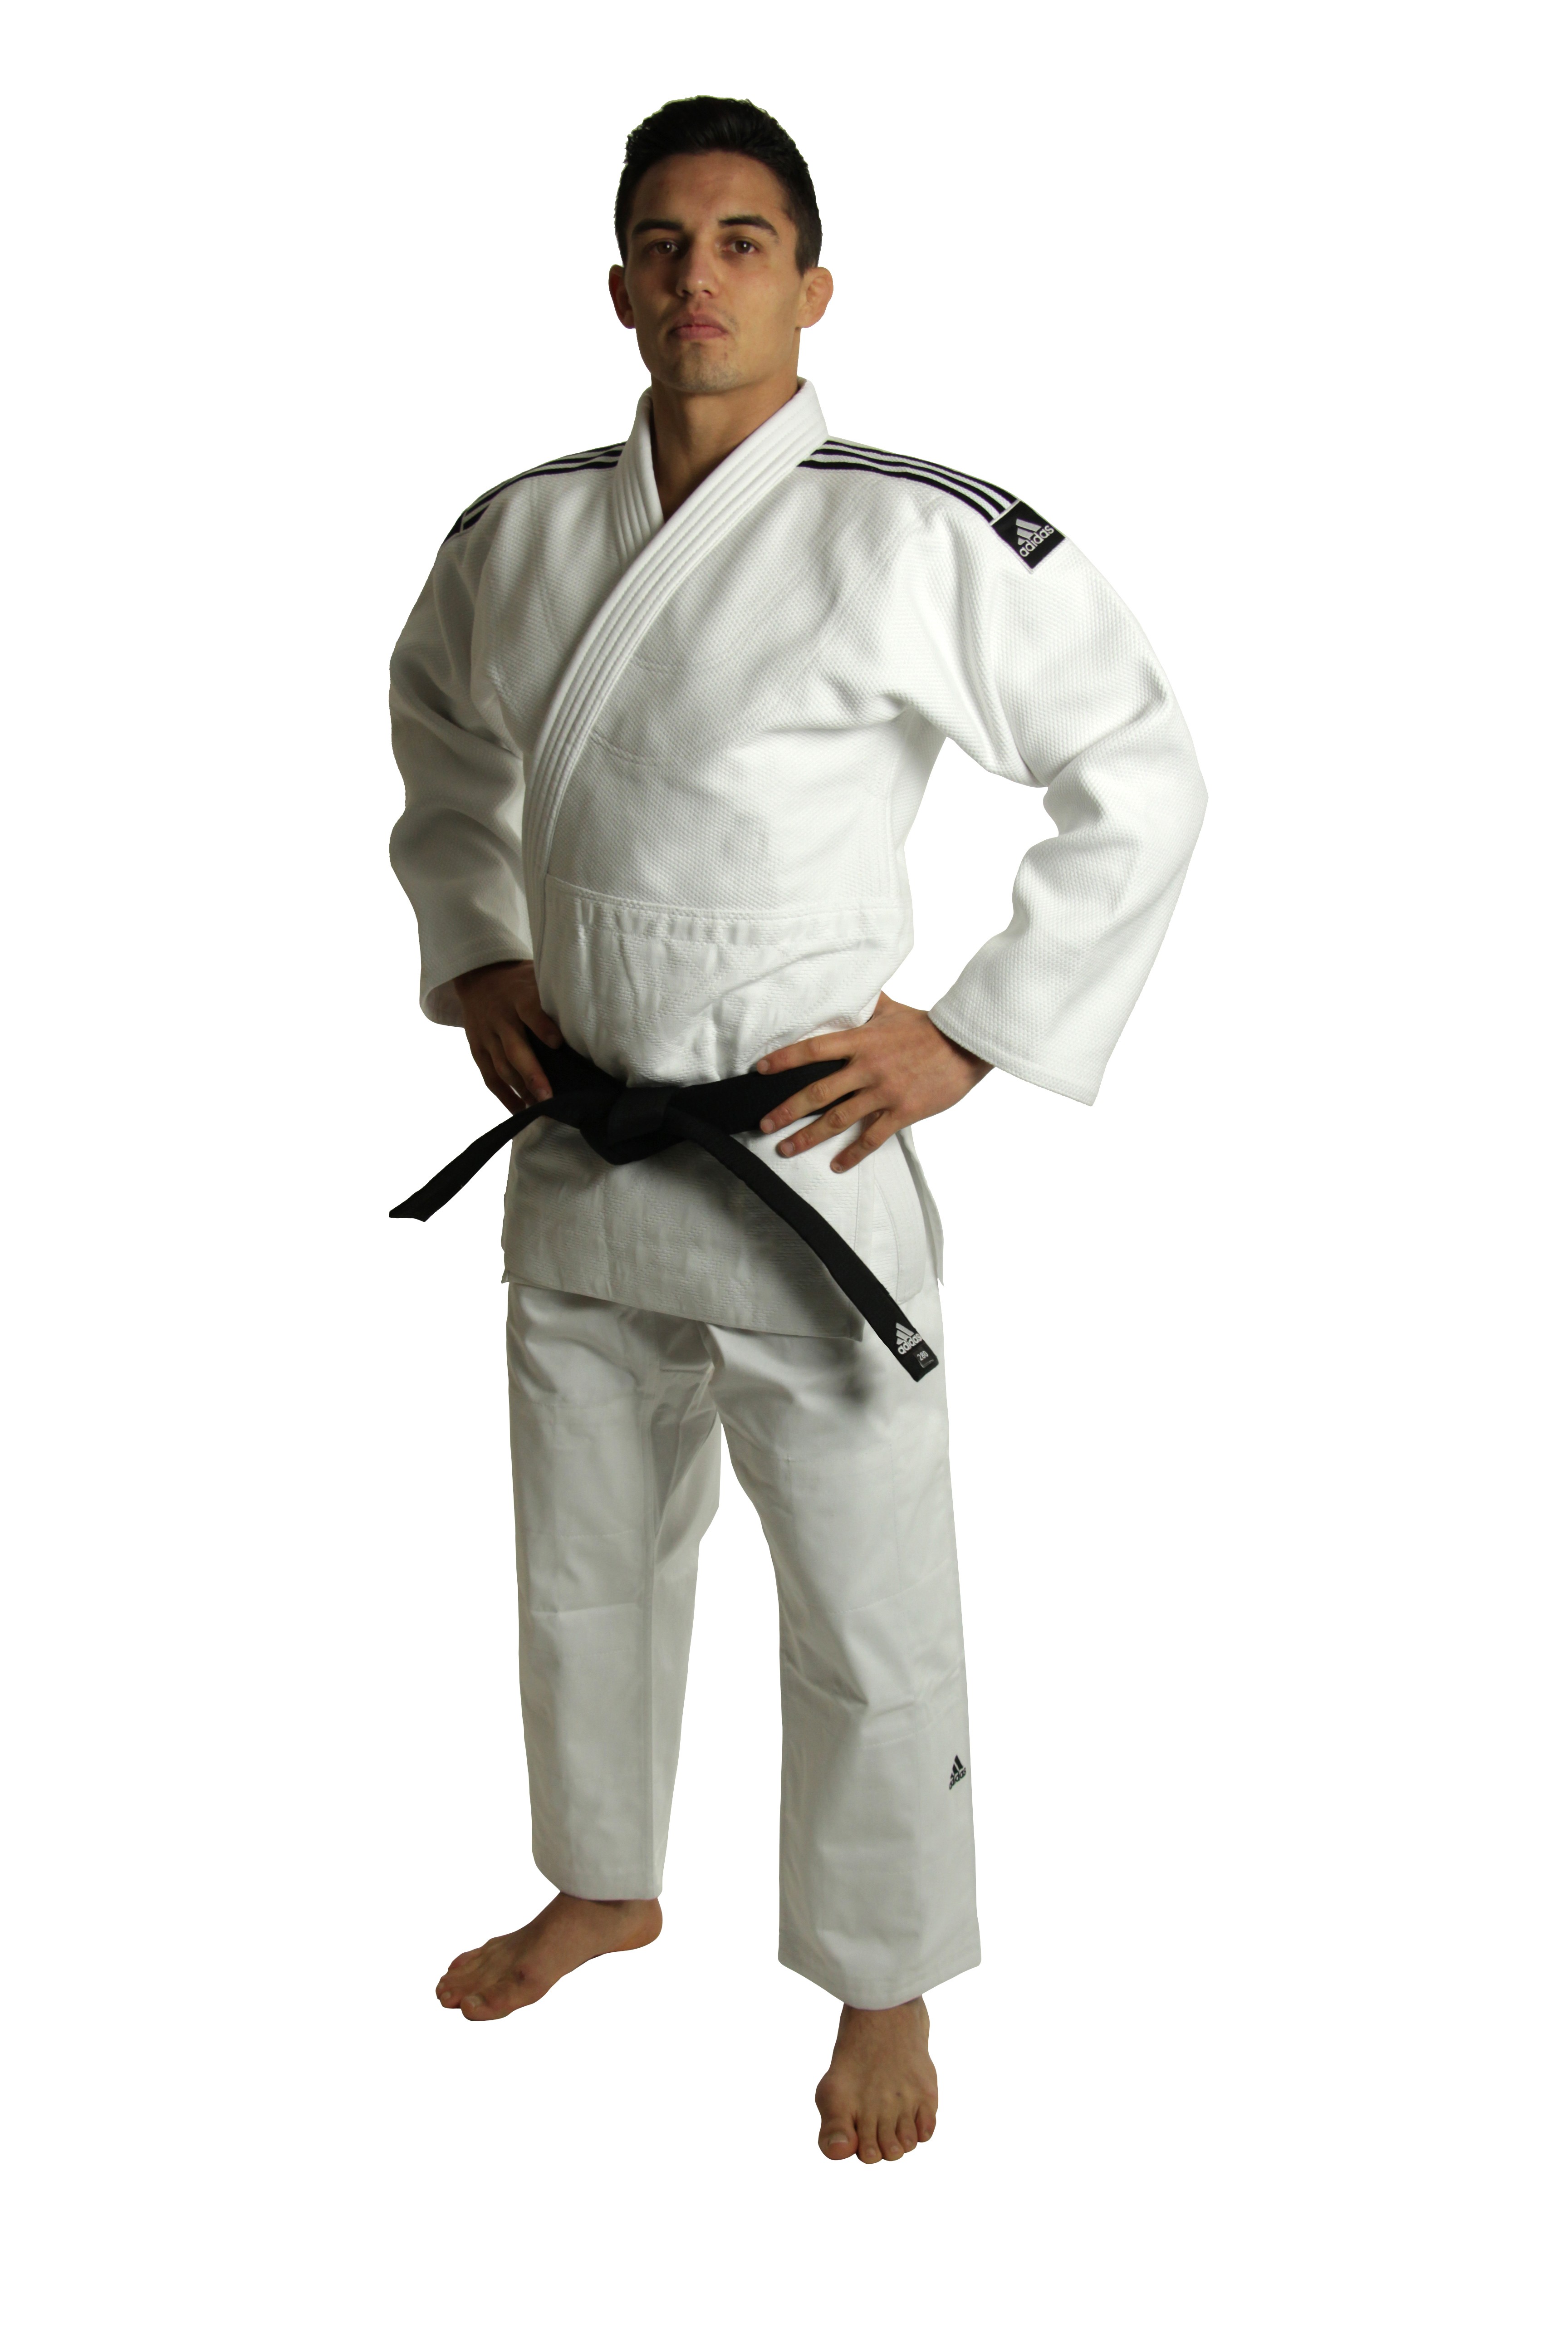 Kimono Judo Adidas J930, Judogi Adidas blanc: usage